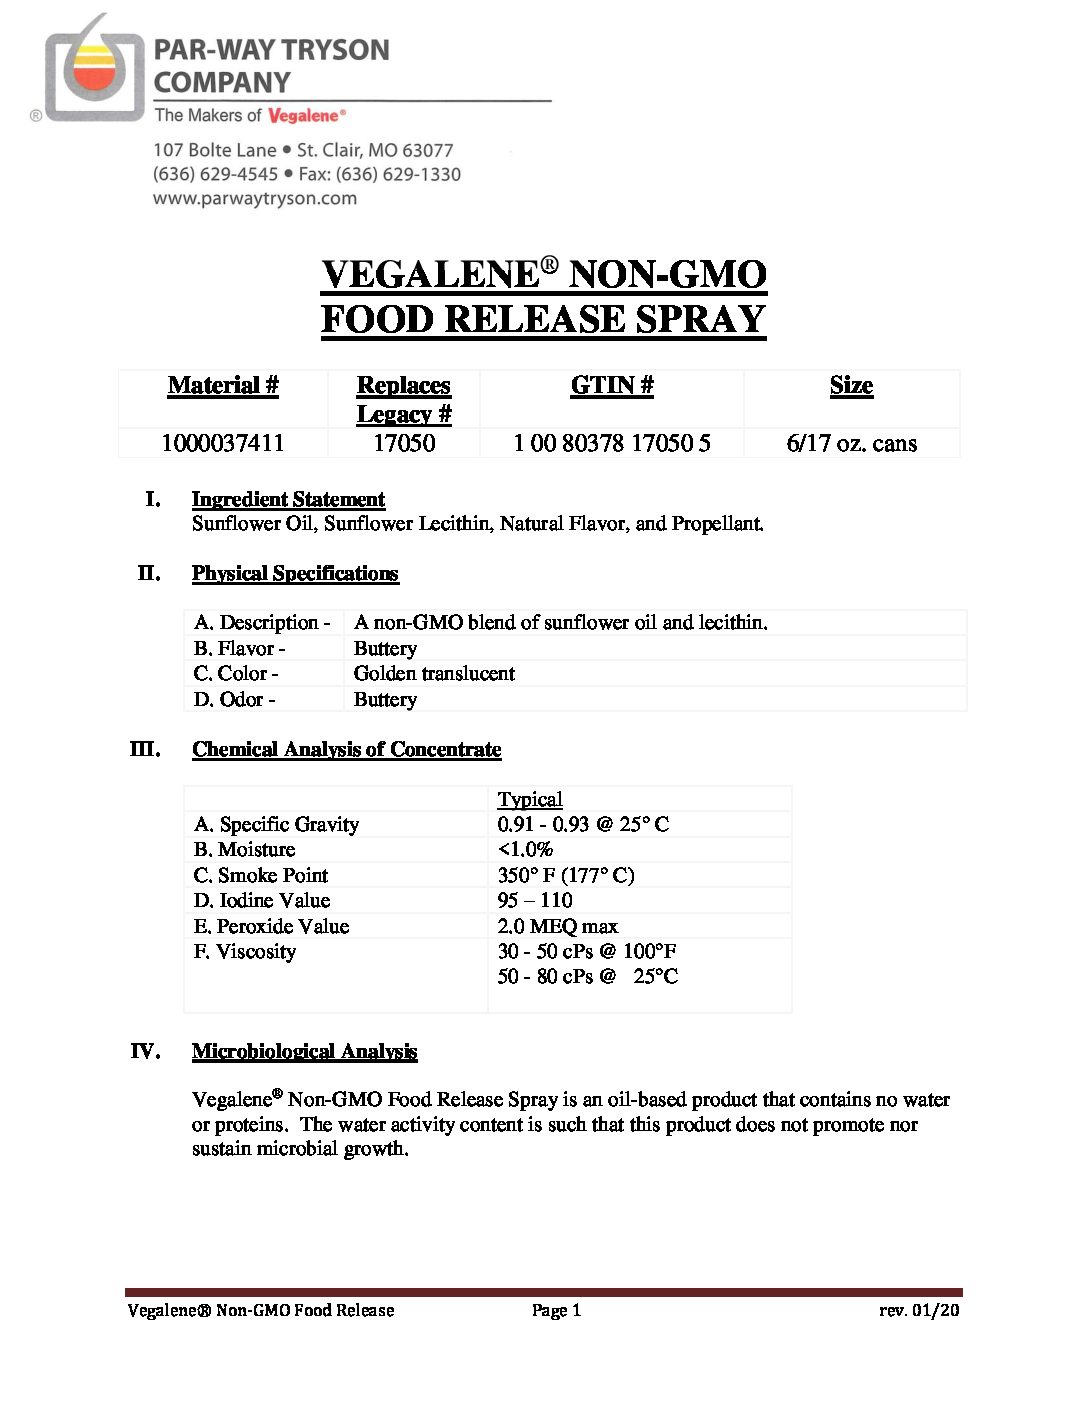 PDS – 1000037411 (17050) – Vegalene Non-GMO Food Release 2020